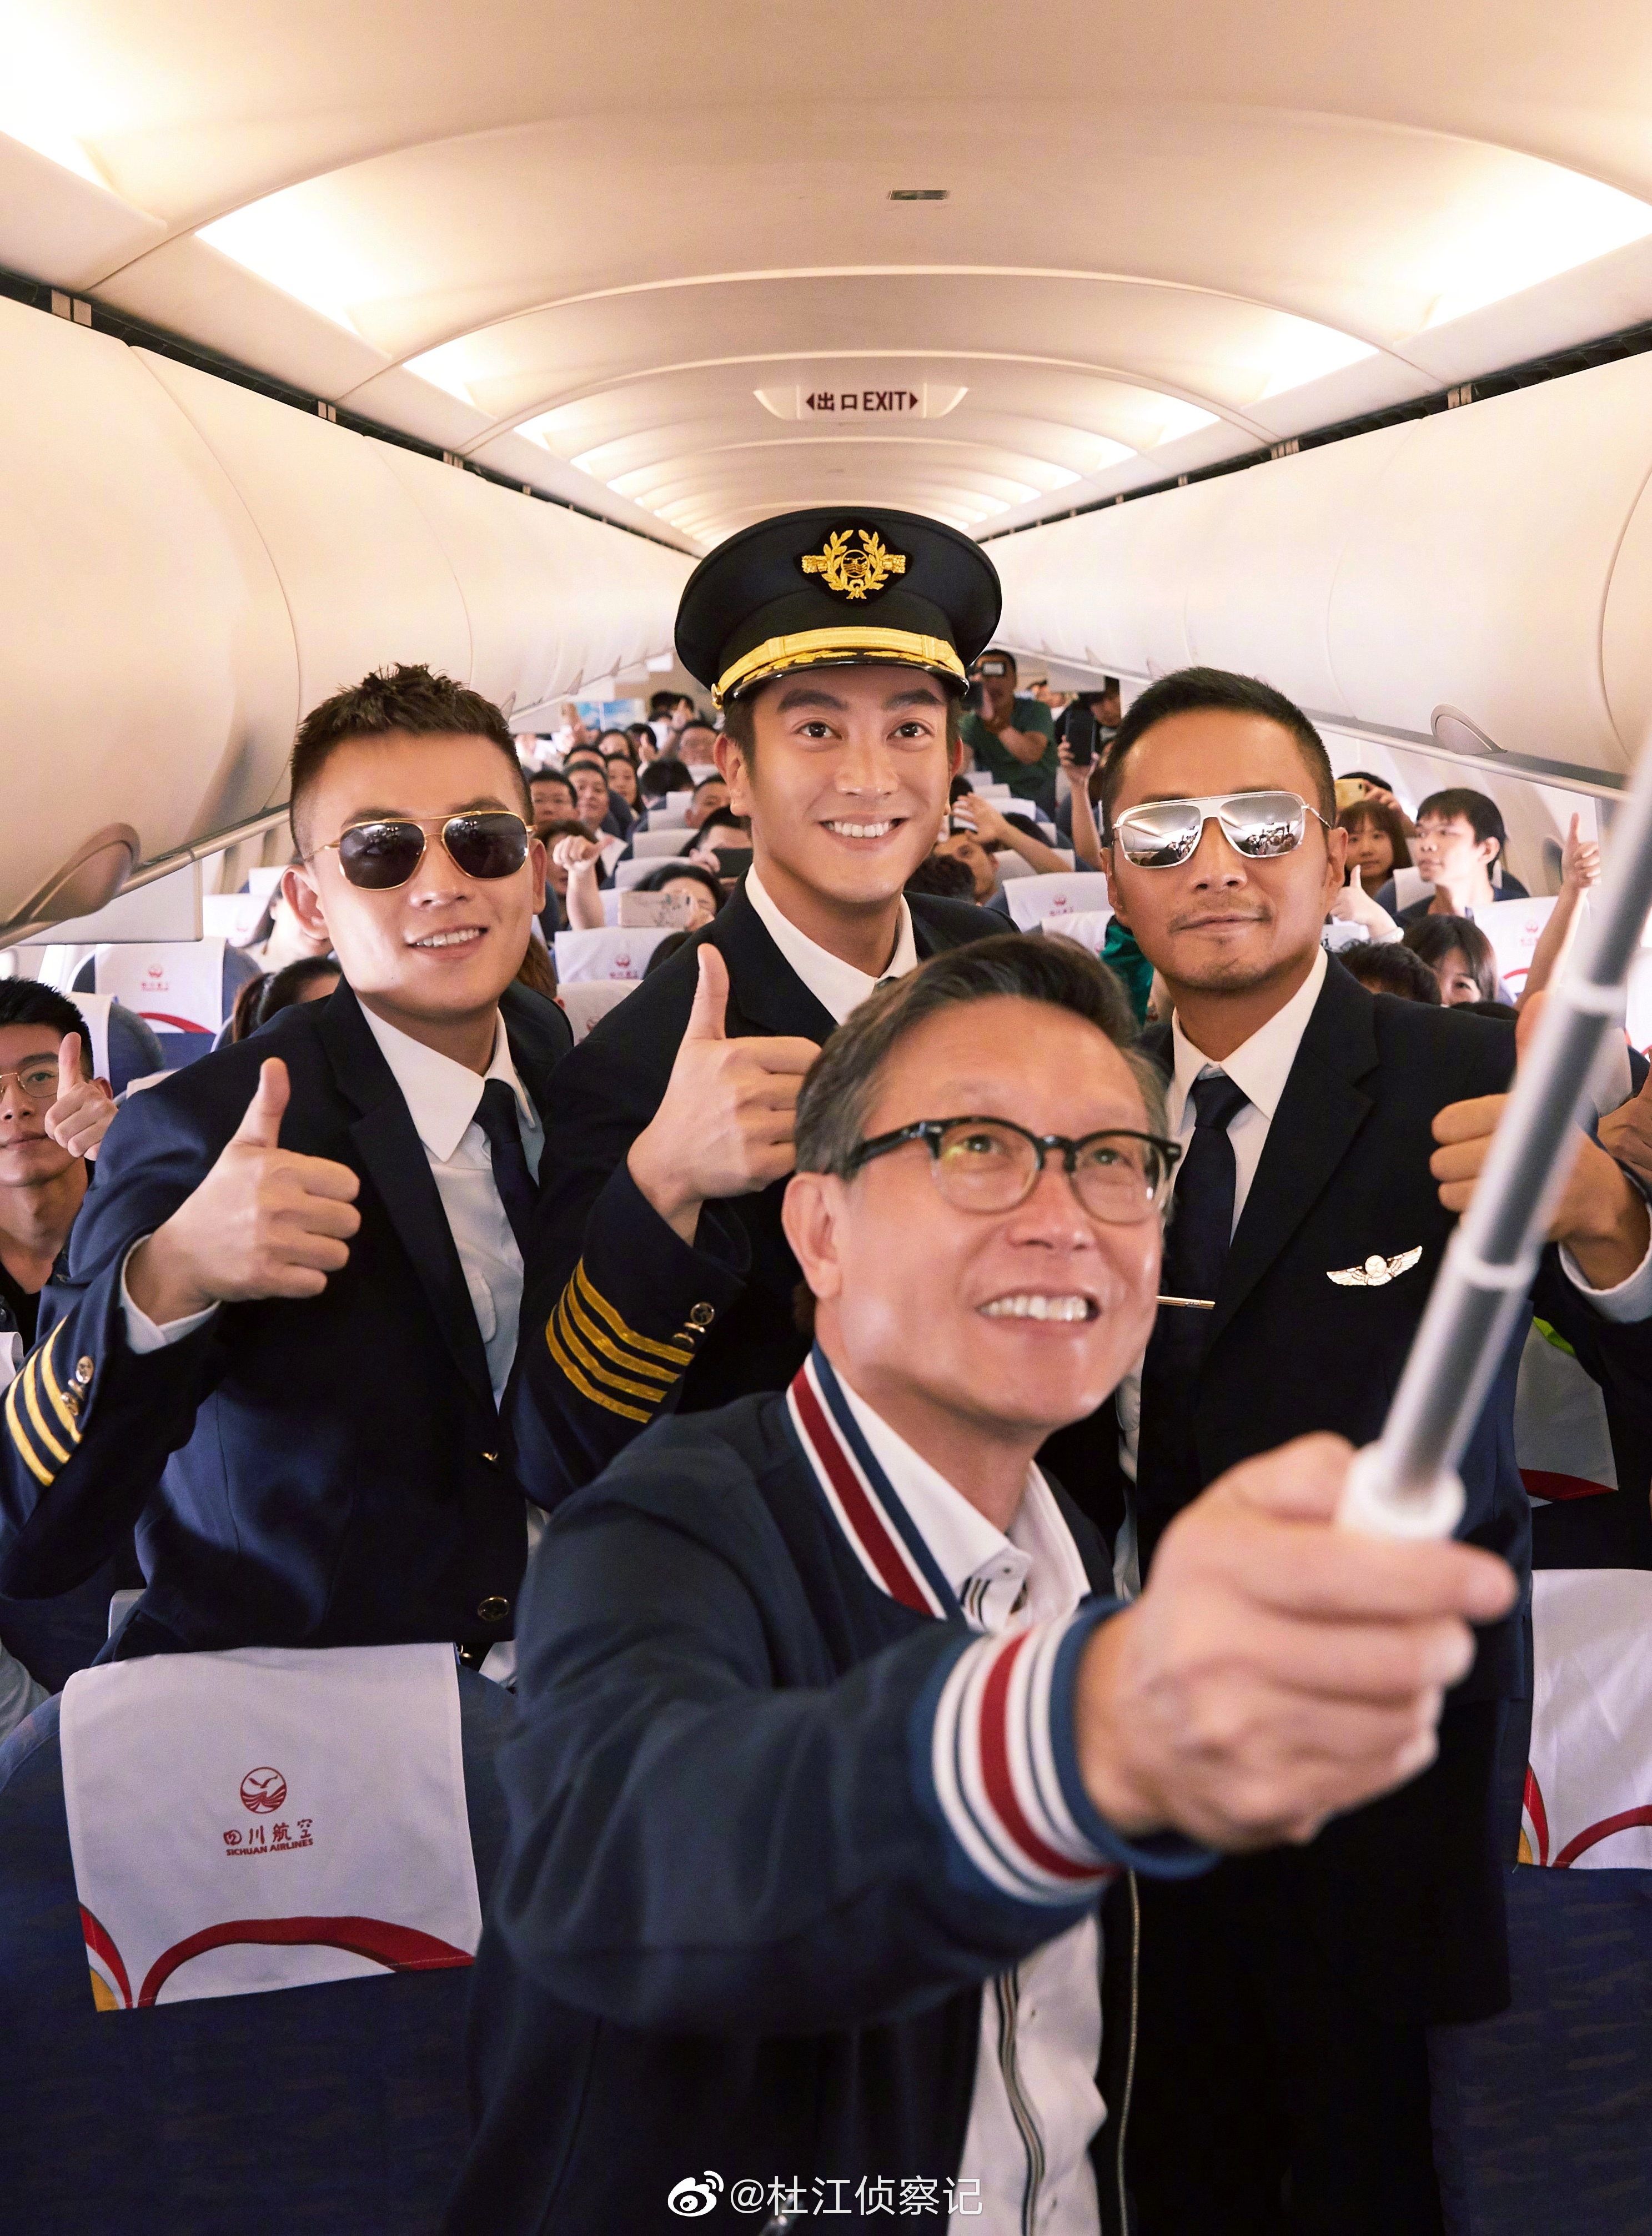 淘气电影日爆中国机长把首映礼办上天飞机上开发布会还有谁